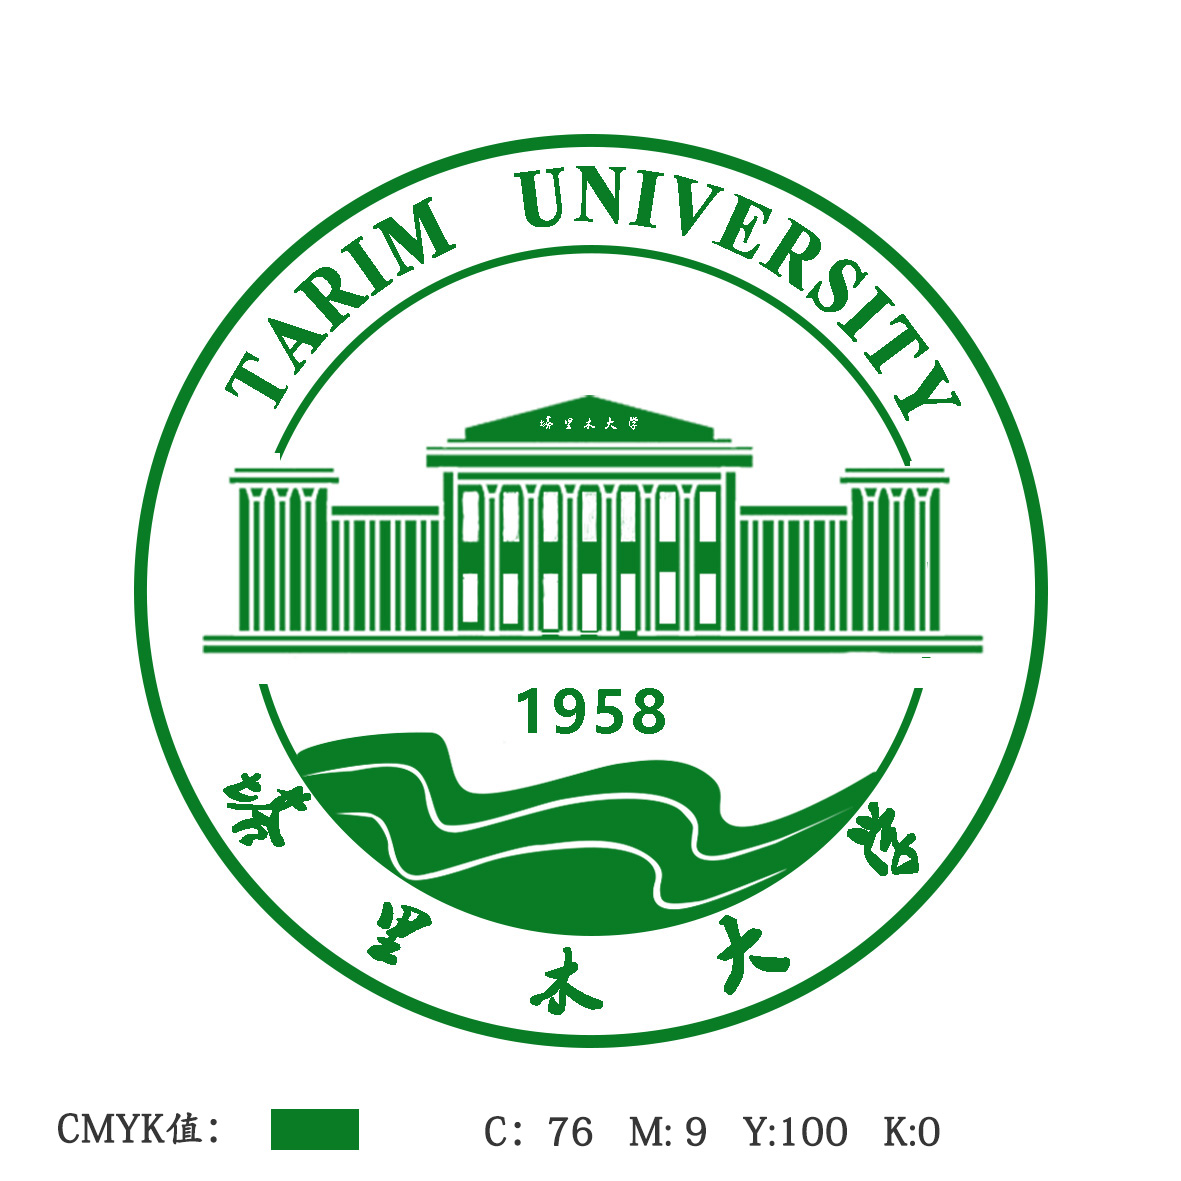 中英文校名是校徽中不可缺少的一部分,塔里木大学校史馆承载着塔里木